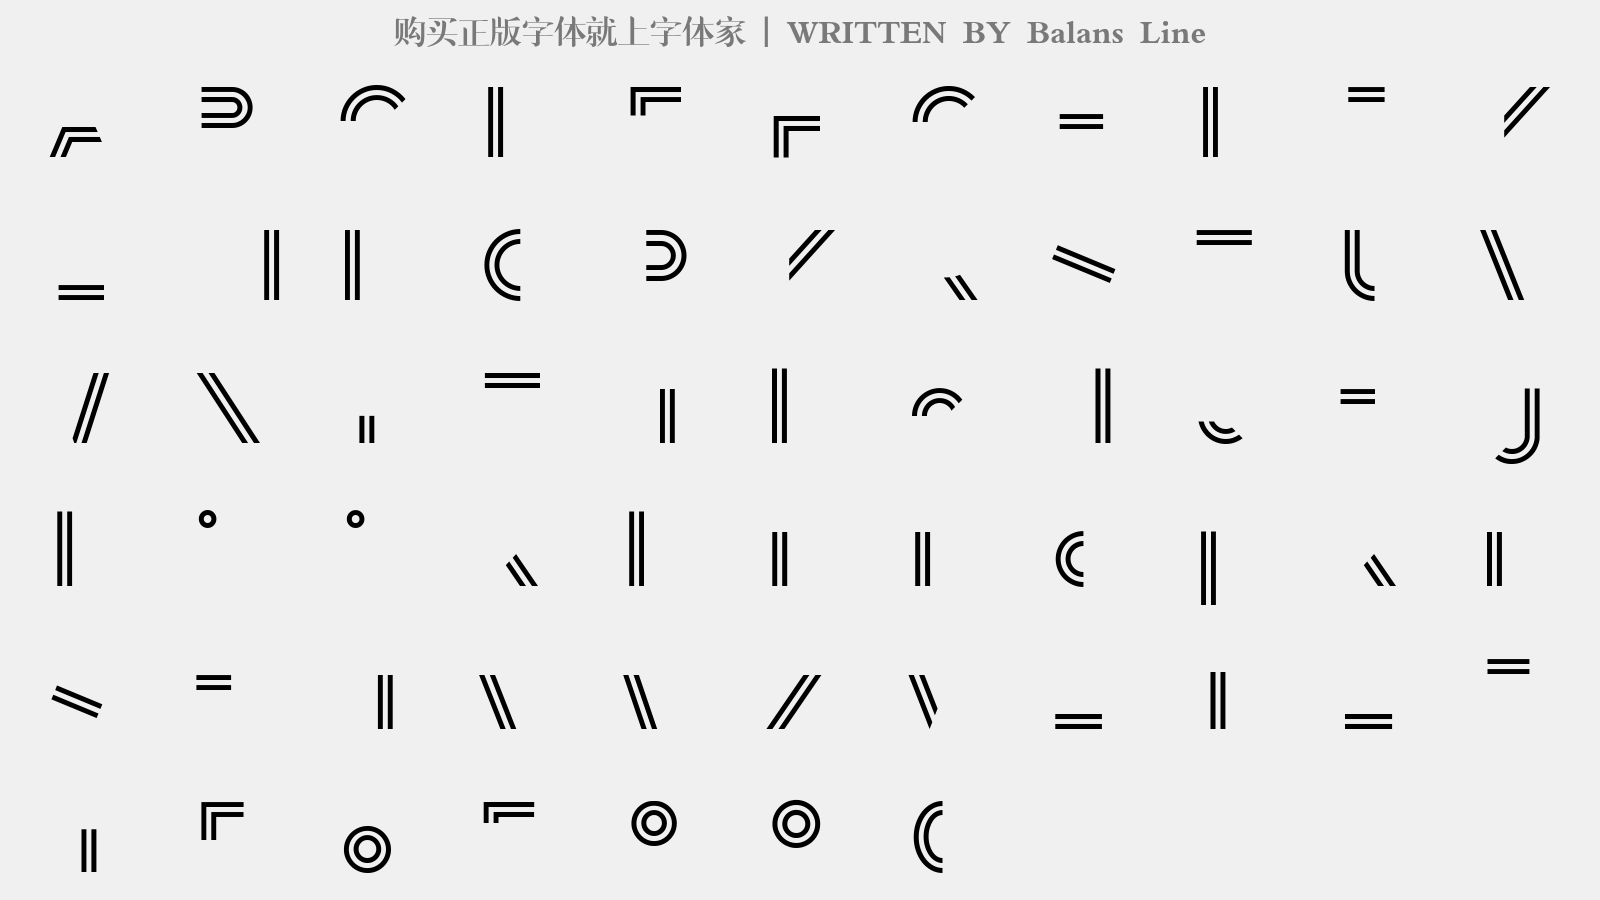 Balans Line - 大写字母/小写字母/数字